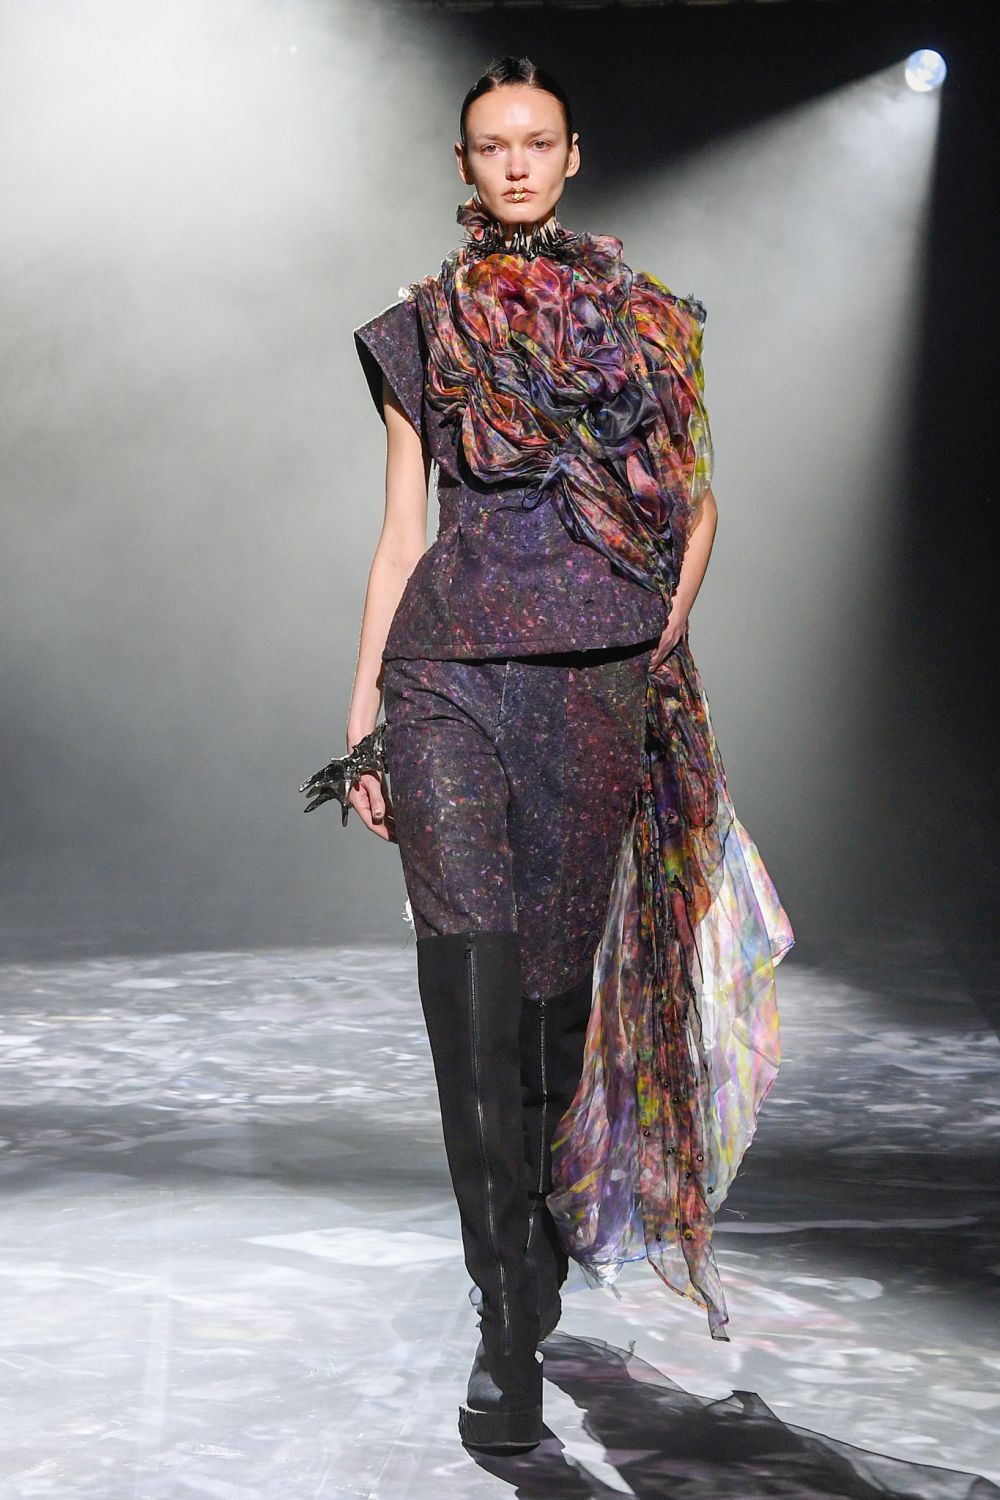 Японский модельер Юима Накадзато использовал в своей коллекции цифровую печать по ткани и переработанный текстиль.